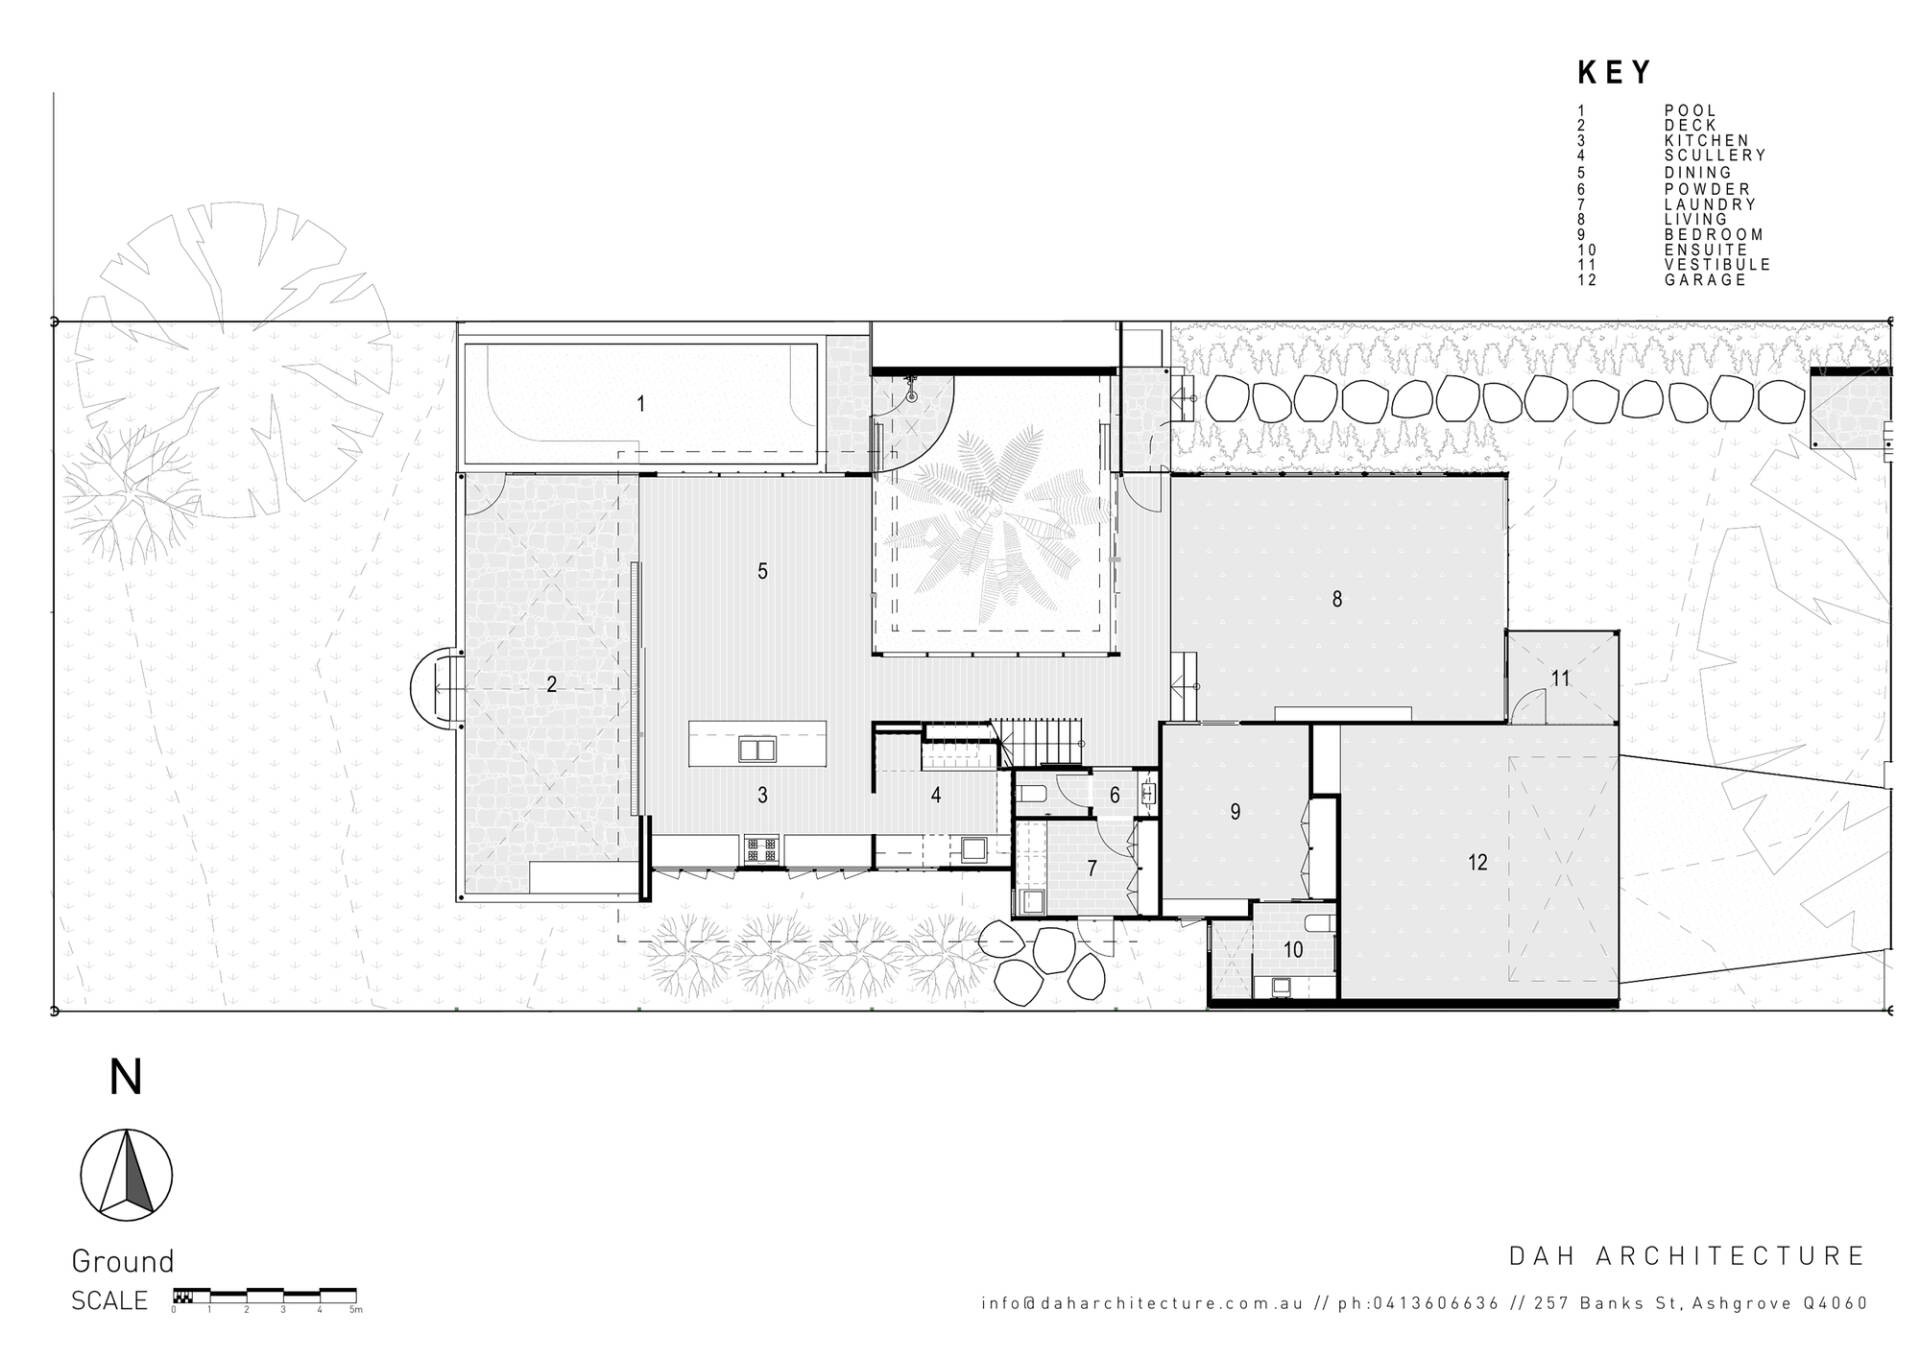 
Các bản vẽ chi tiết thiết kế của căn nhà
